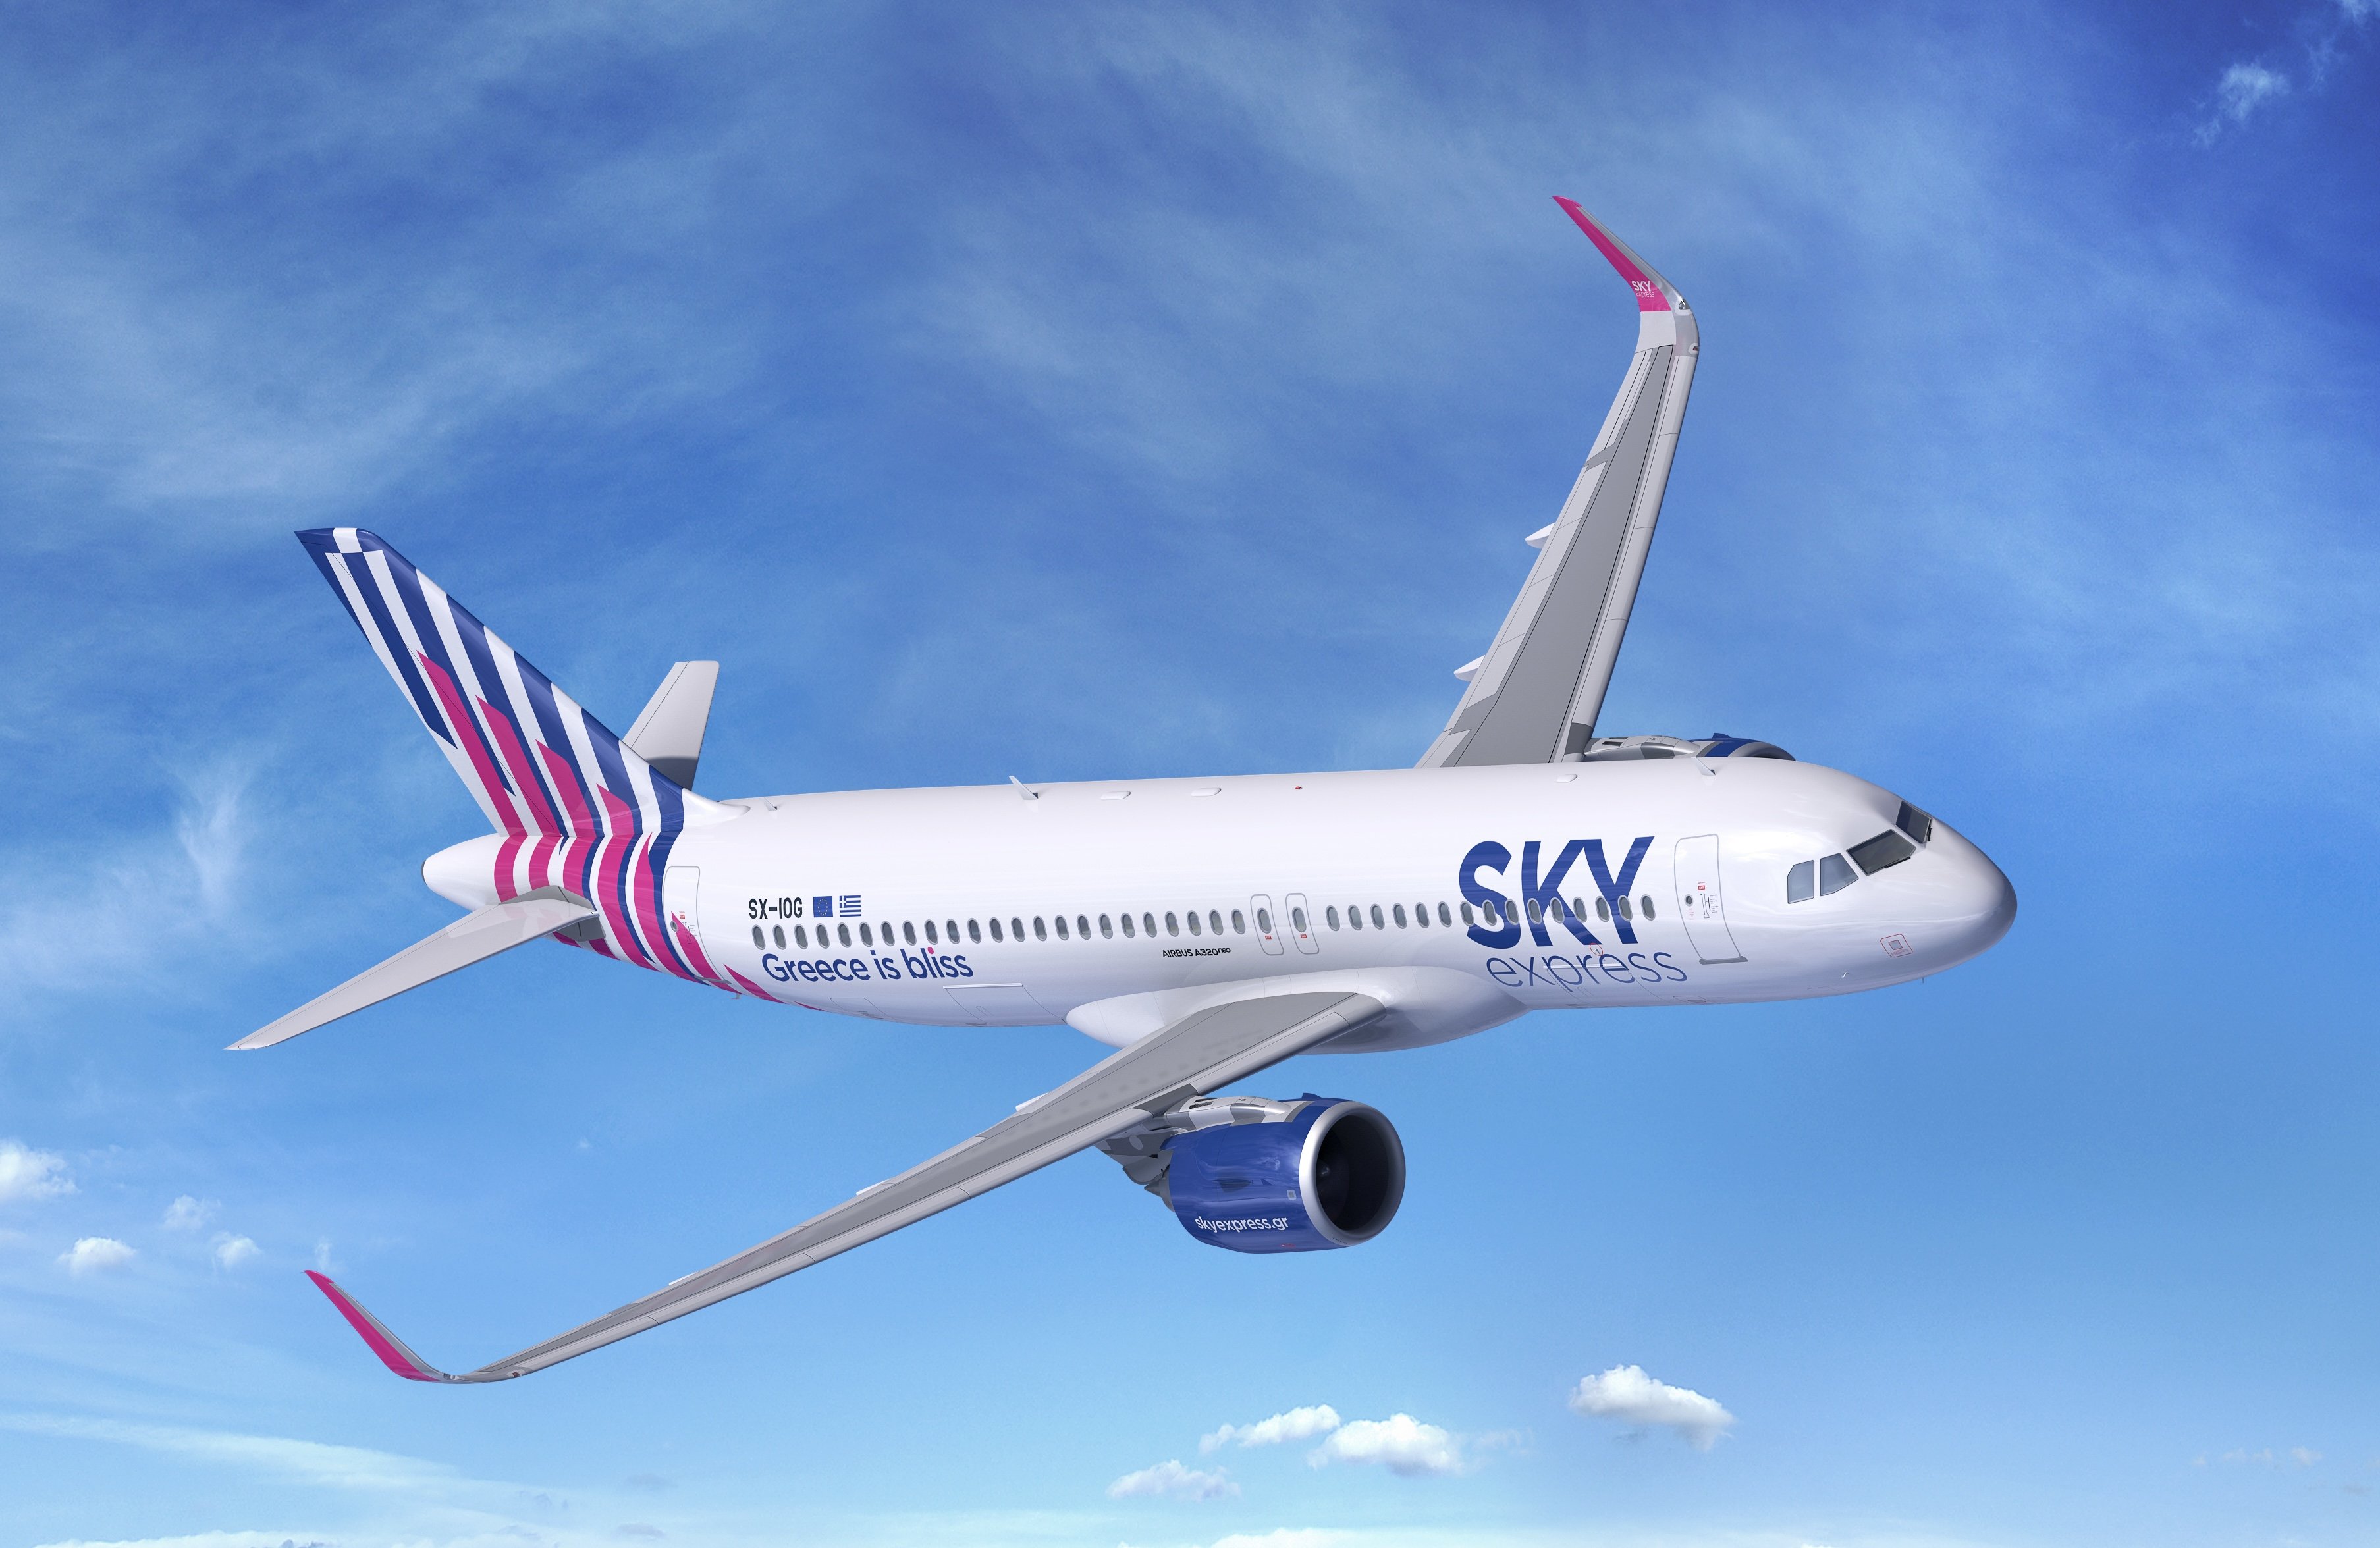 SKY express: Ξεκινά από το Νοέμβριο απευθείας πτήσεις Αθήνα-Σόφια